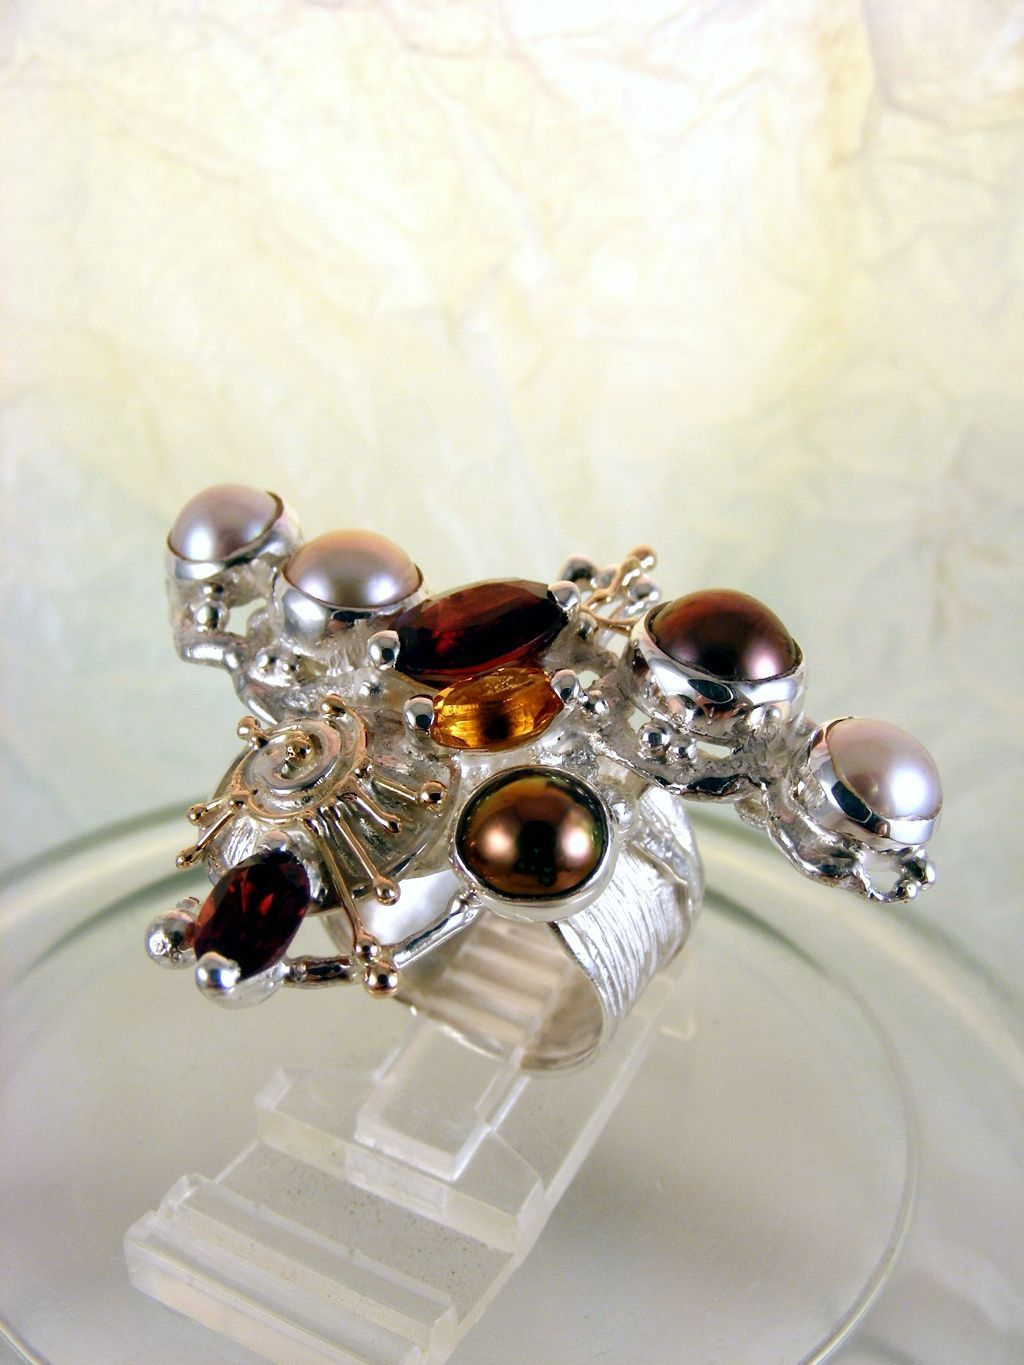 módní šperky, modní styl, sběratelská položka, šperky vyrobené ze stříbra a zlata, ručně vyráběný prsten s granátem a perlou, ručně vyráběný prsten s granátem a citrinem, ručně vyráběný prsten s citrinem a perlou, Gregory Pyra Piro prstýnek 3627